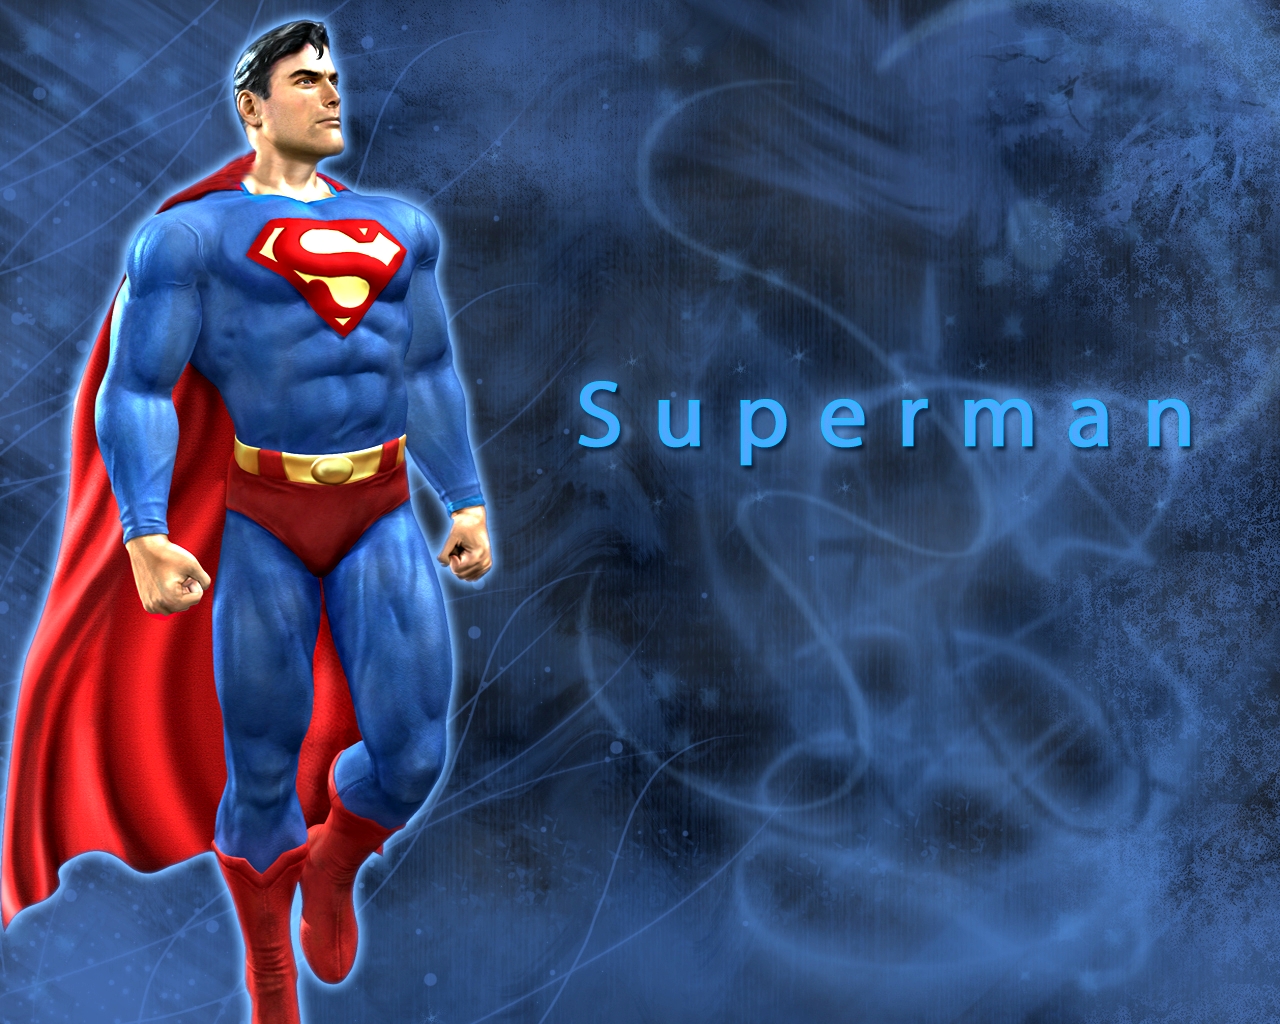 48+] Superman Comic Wallpapers - WallpaperSafari